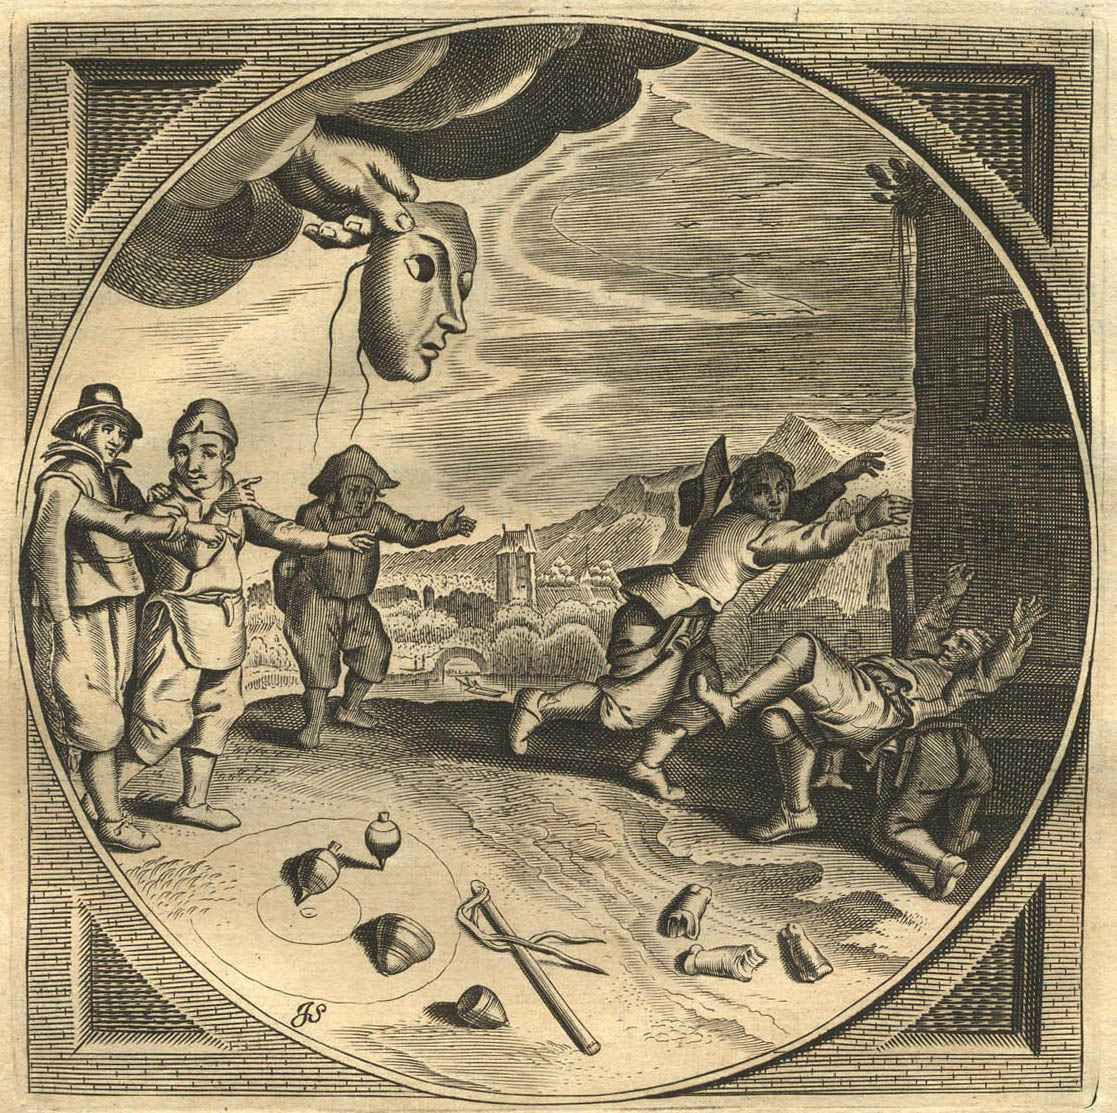 Kupferstich von Jan Swelinck: aus der Wolke kommt eine Hand mit einer Maske, vorn liegen Kreisel und Peitsche, 3 Kinder stehen dabei, 3 rennen ängstlich weg und stolpern übereinander.